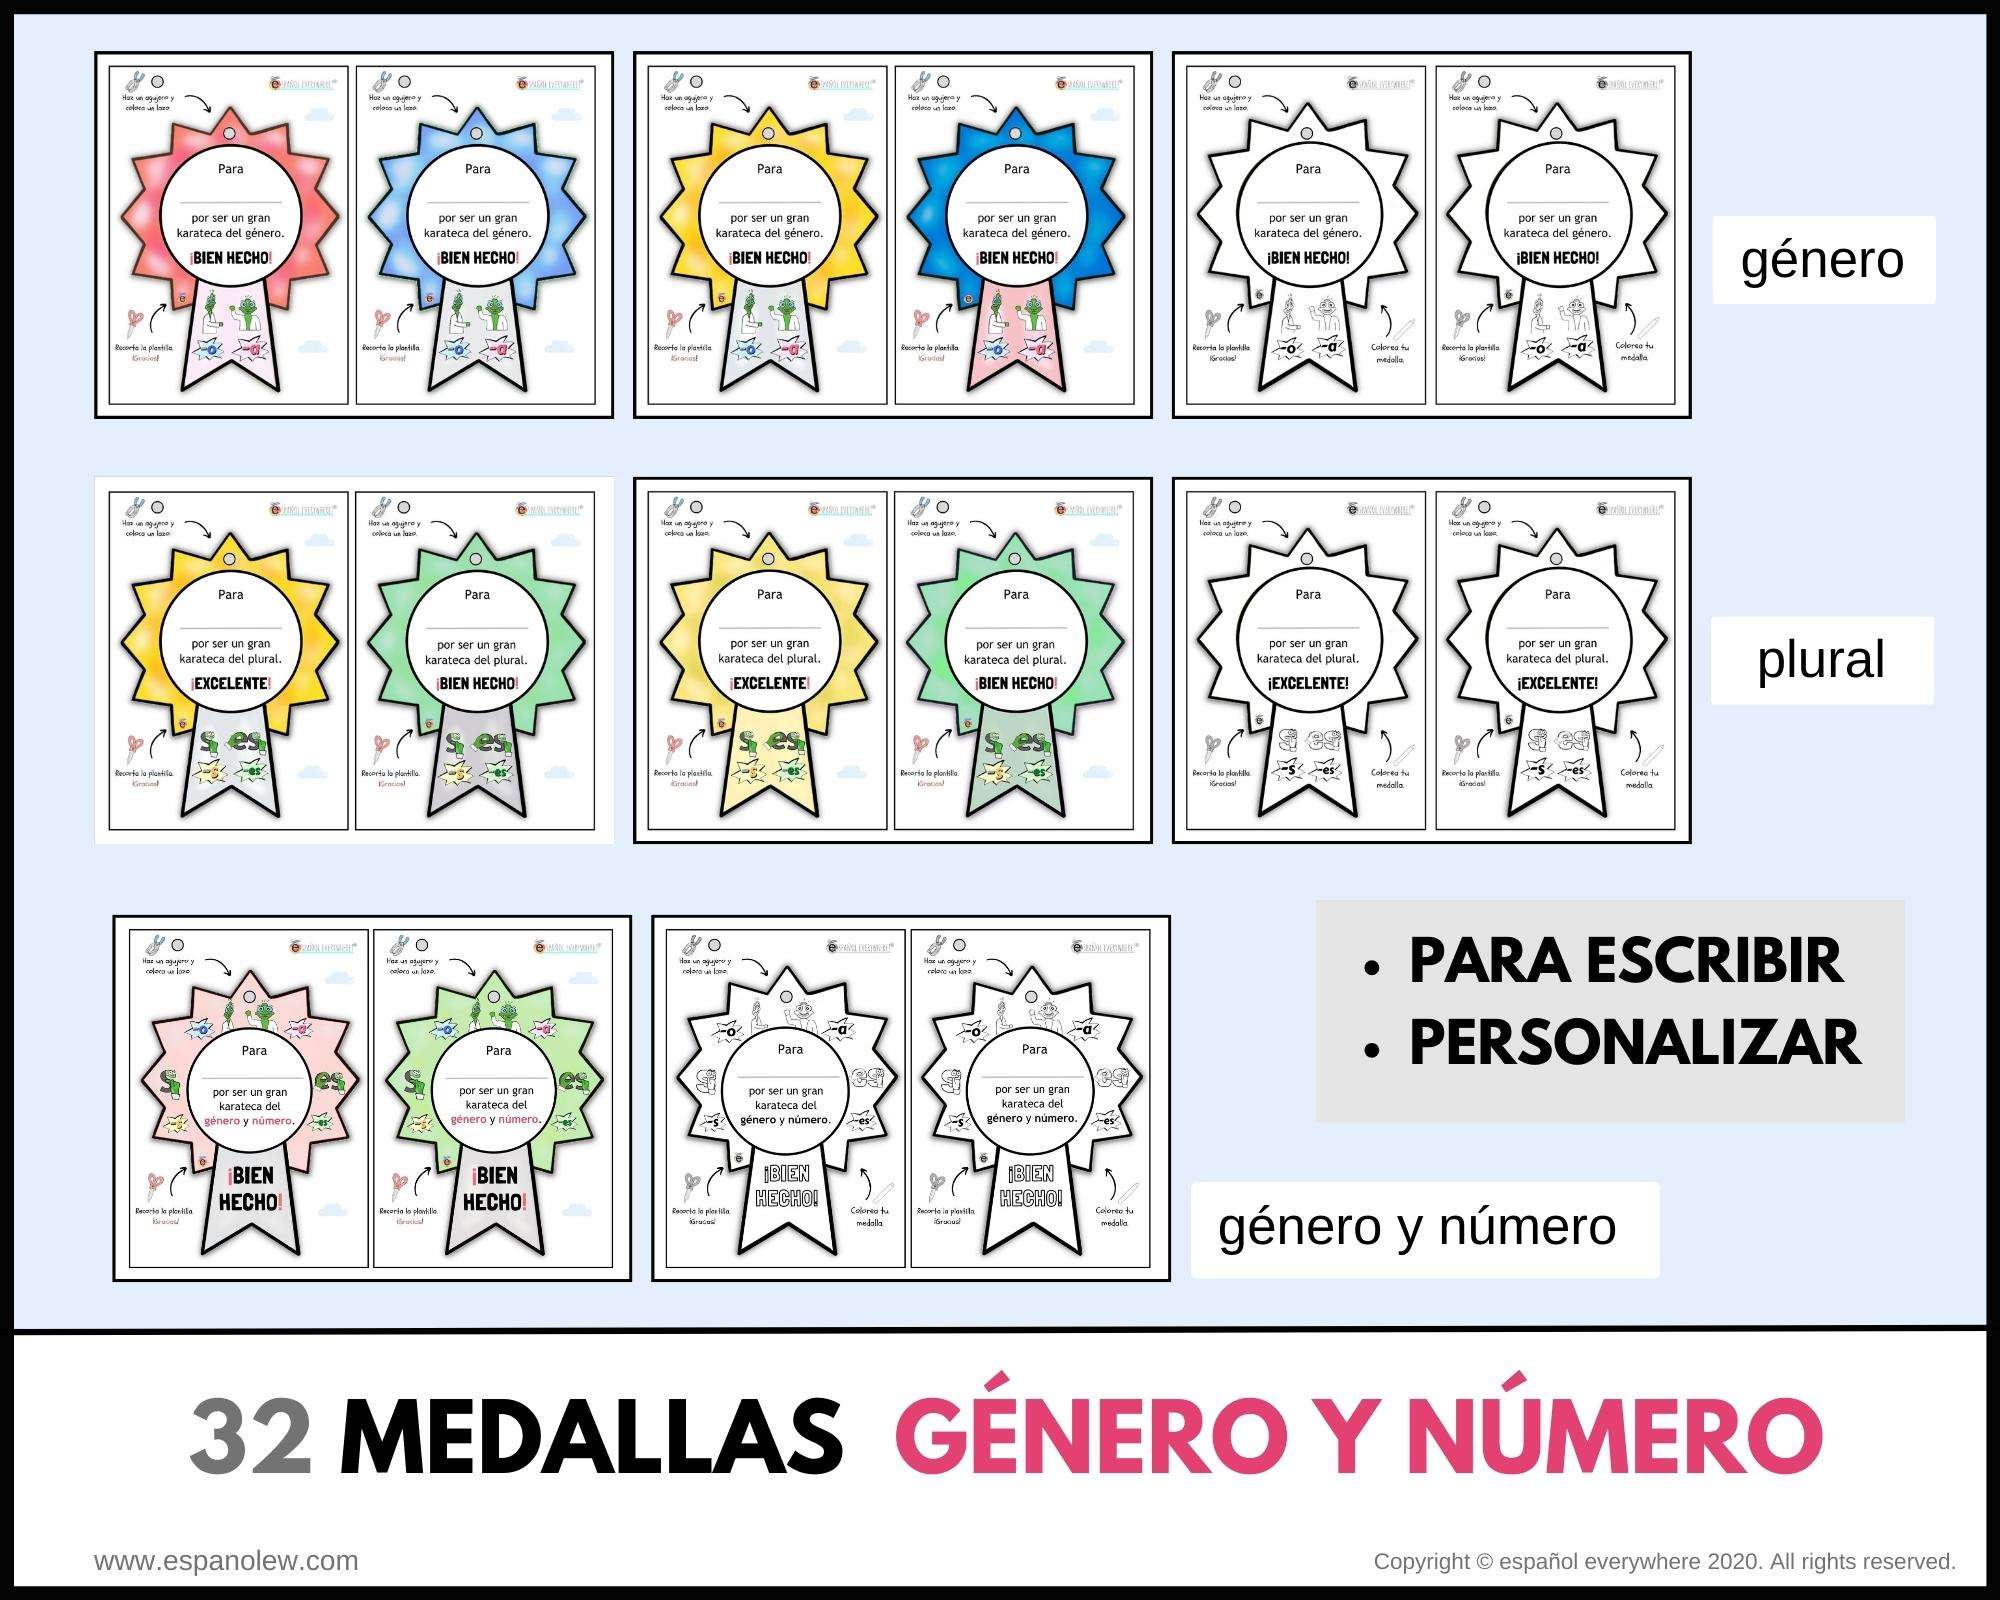 Medallas y premios con género y número. Concordancia género y